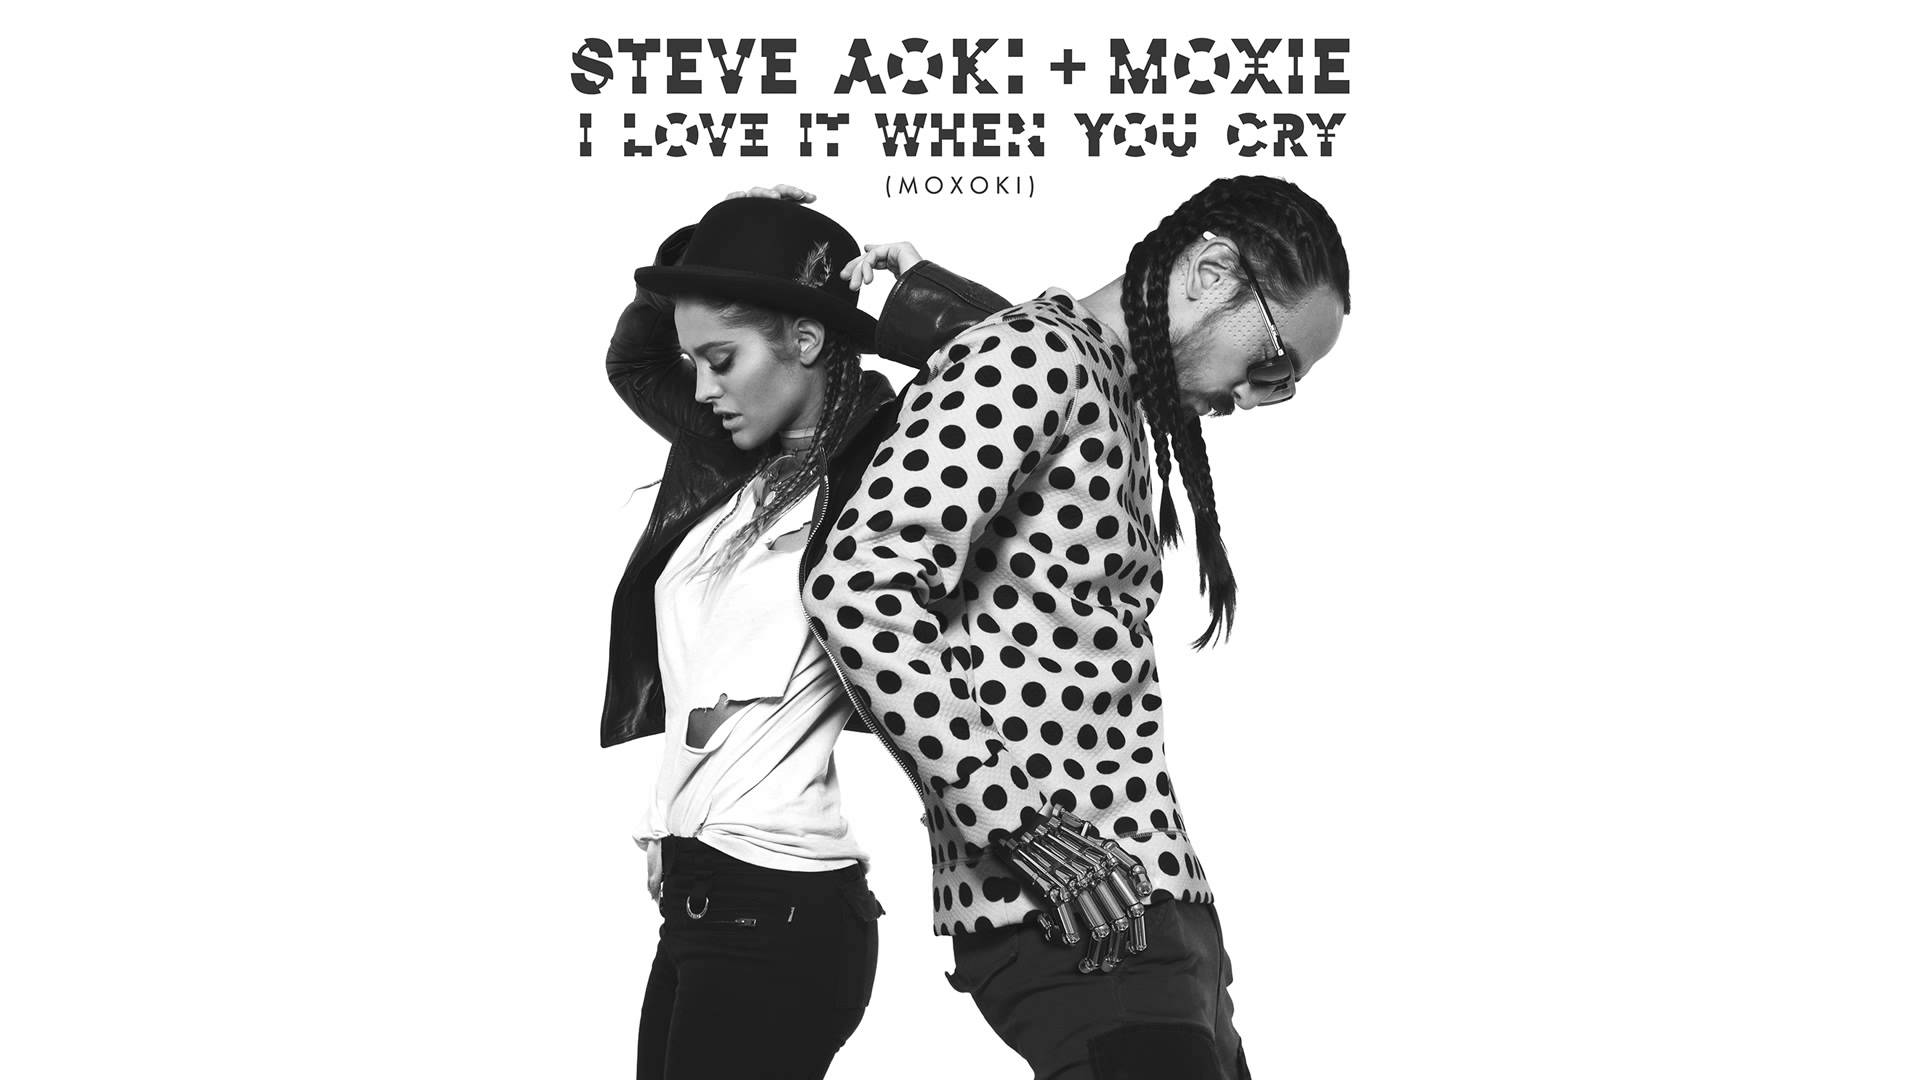 I Love It When You Cry (Moxoki)-Moxie & Steve Aoki